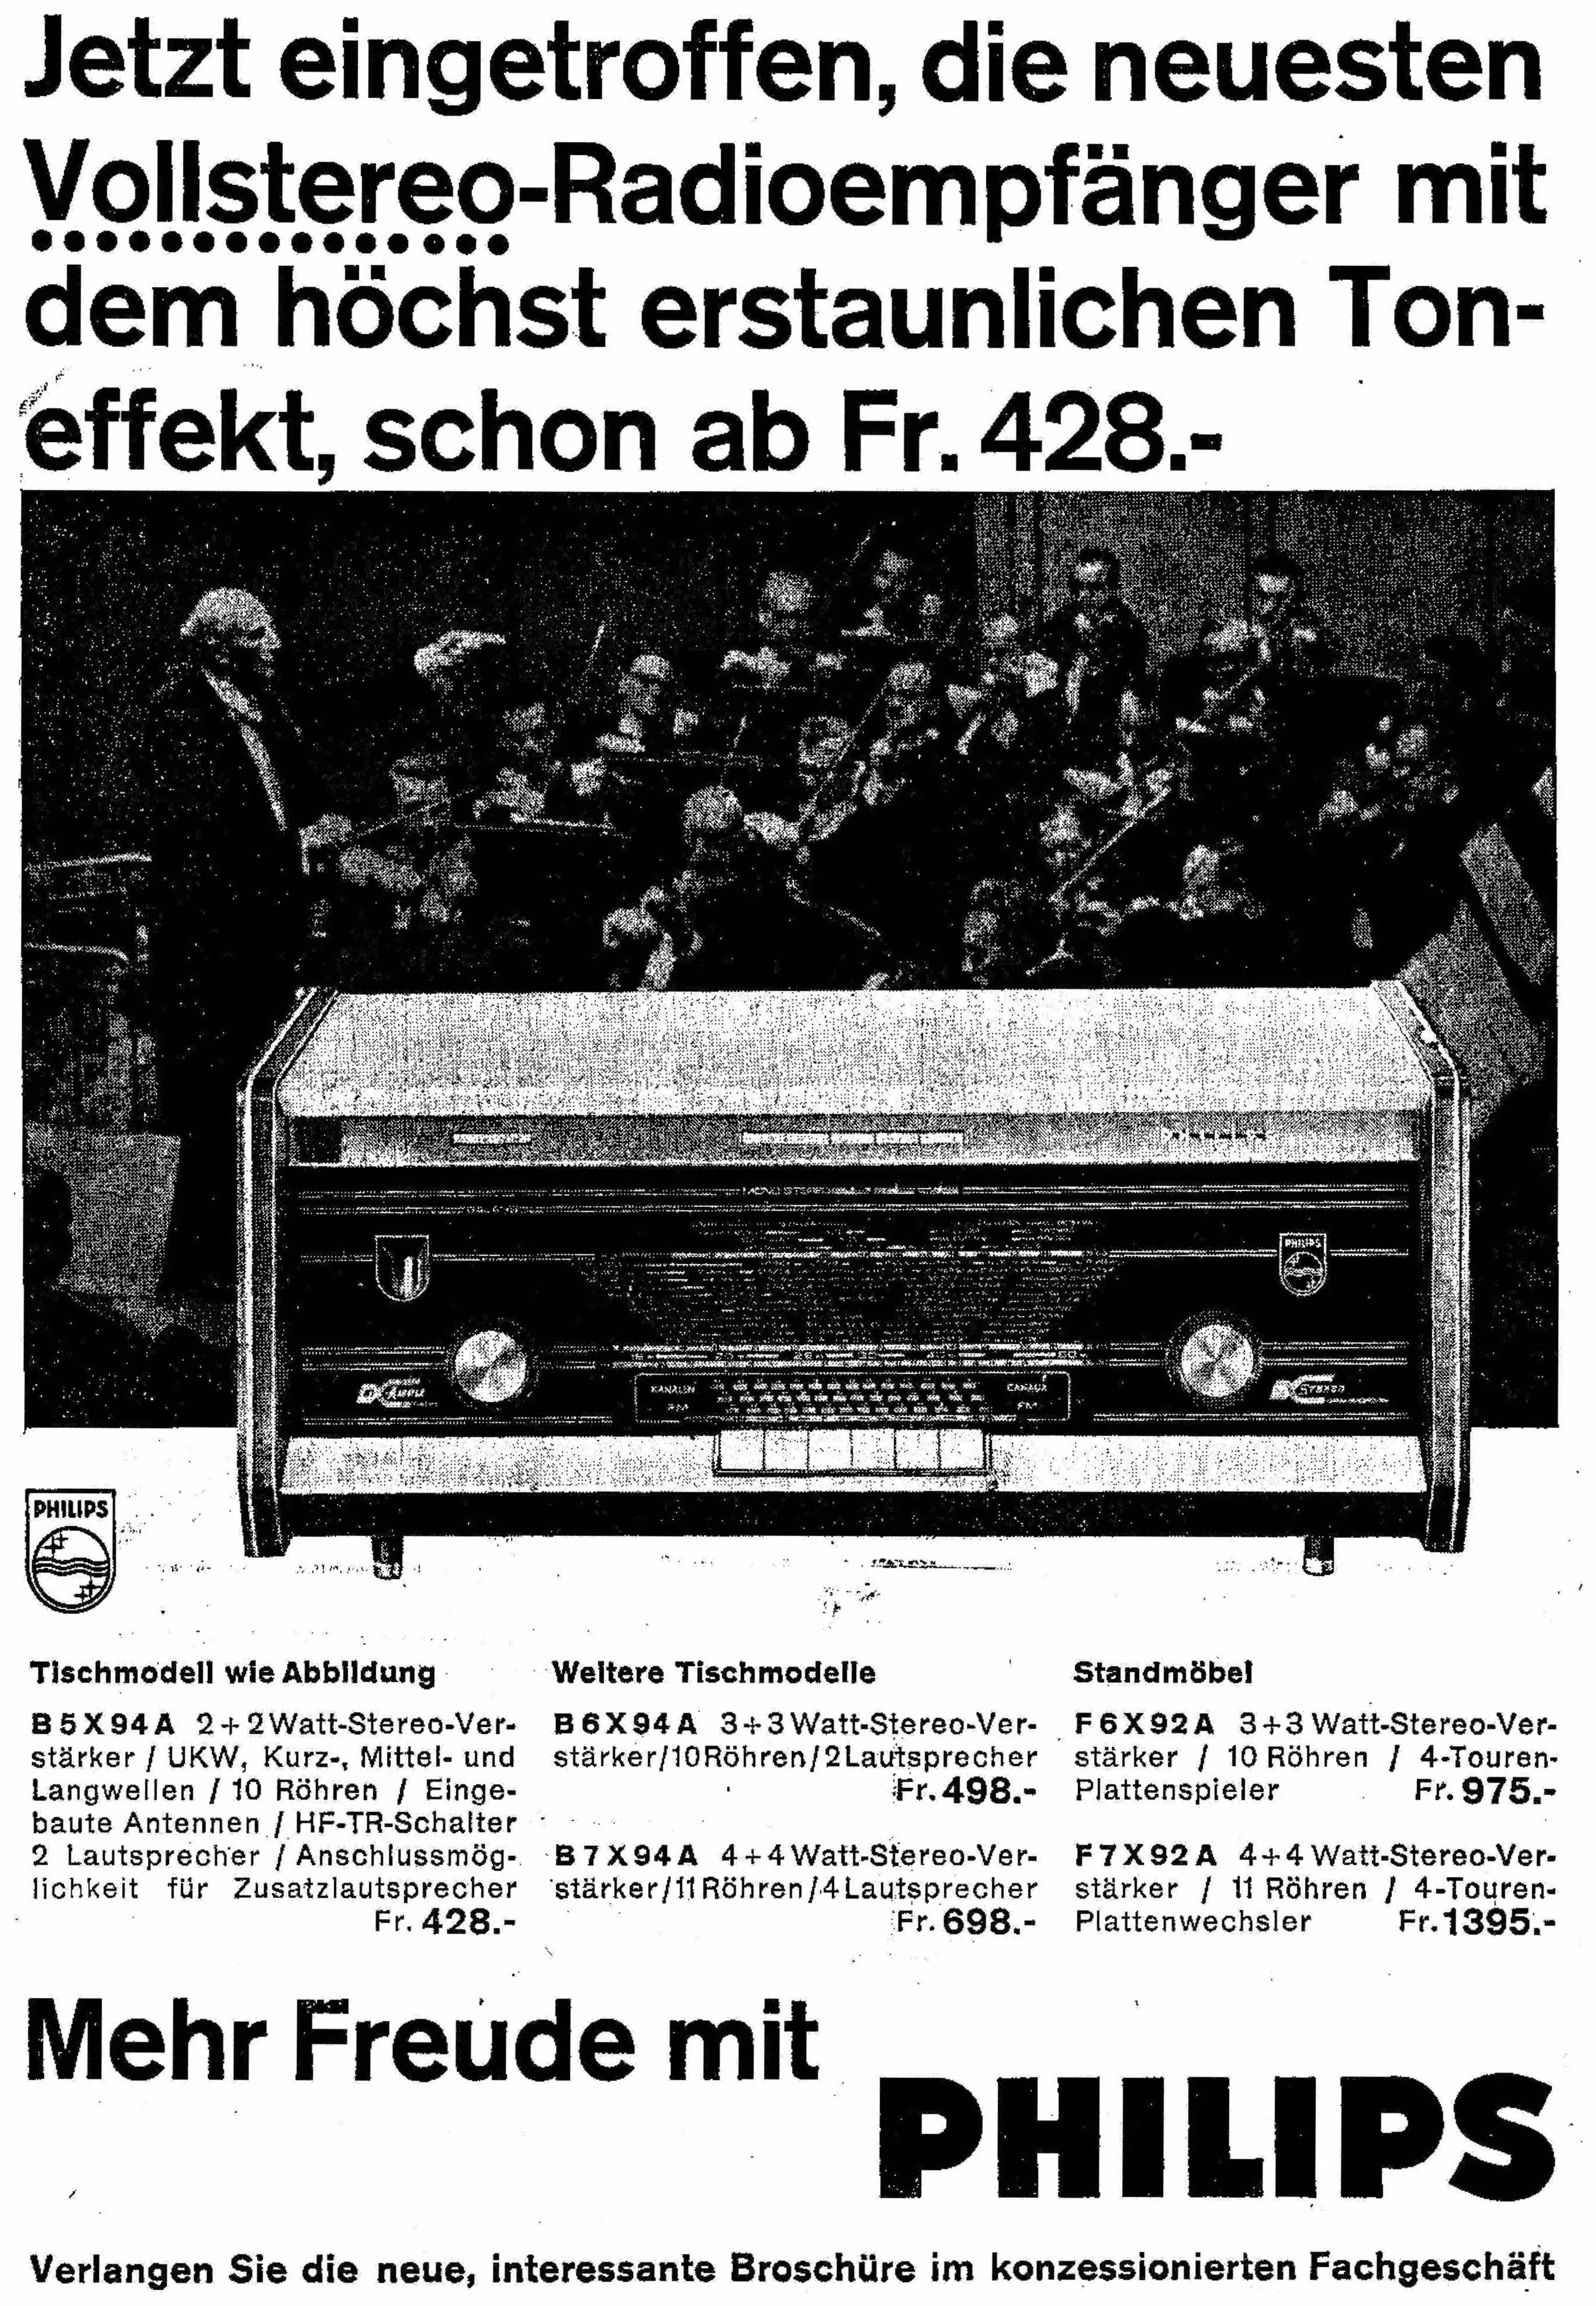 Philips 1959 02.jpg